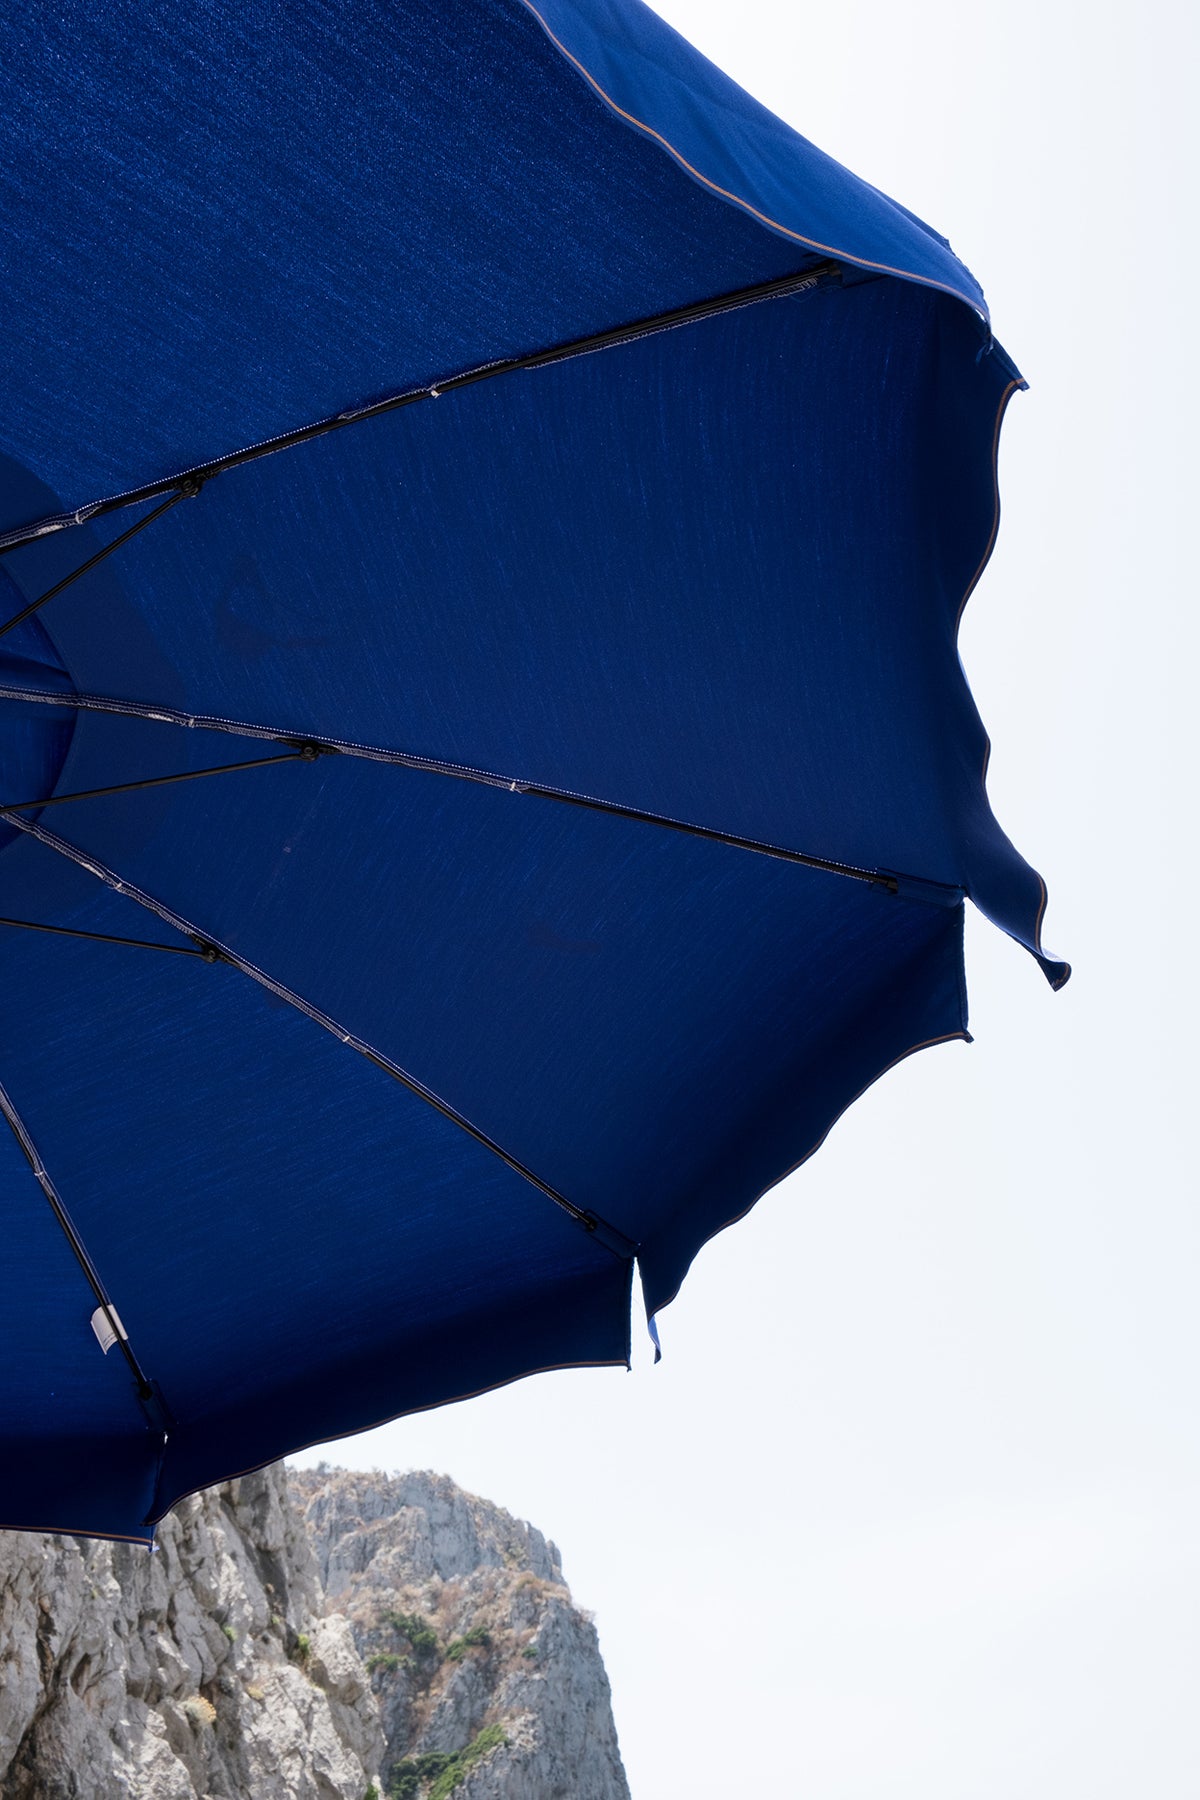 Luigi Beach Under the Umbrella